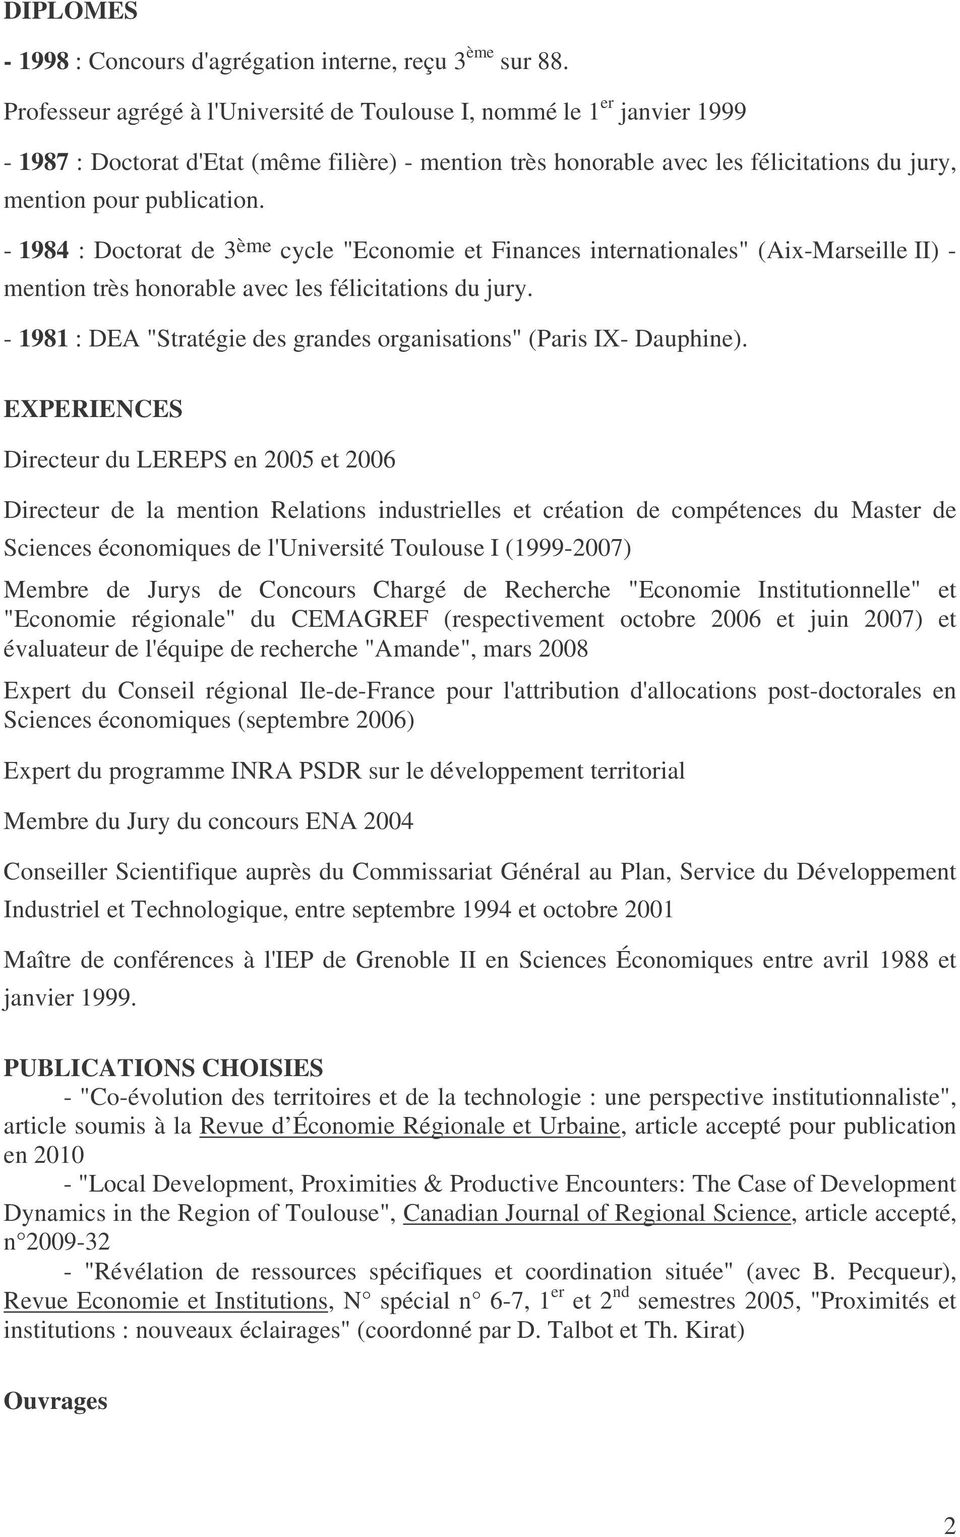 - 1984 : Doctorat de 3 ème cycle "Economie et Finances internationales" (Aix-Marseille II) - mention très honorable avec les félicitations du jury.